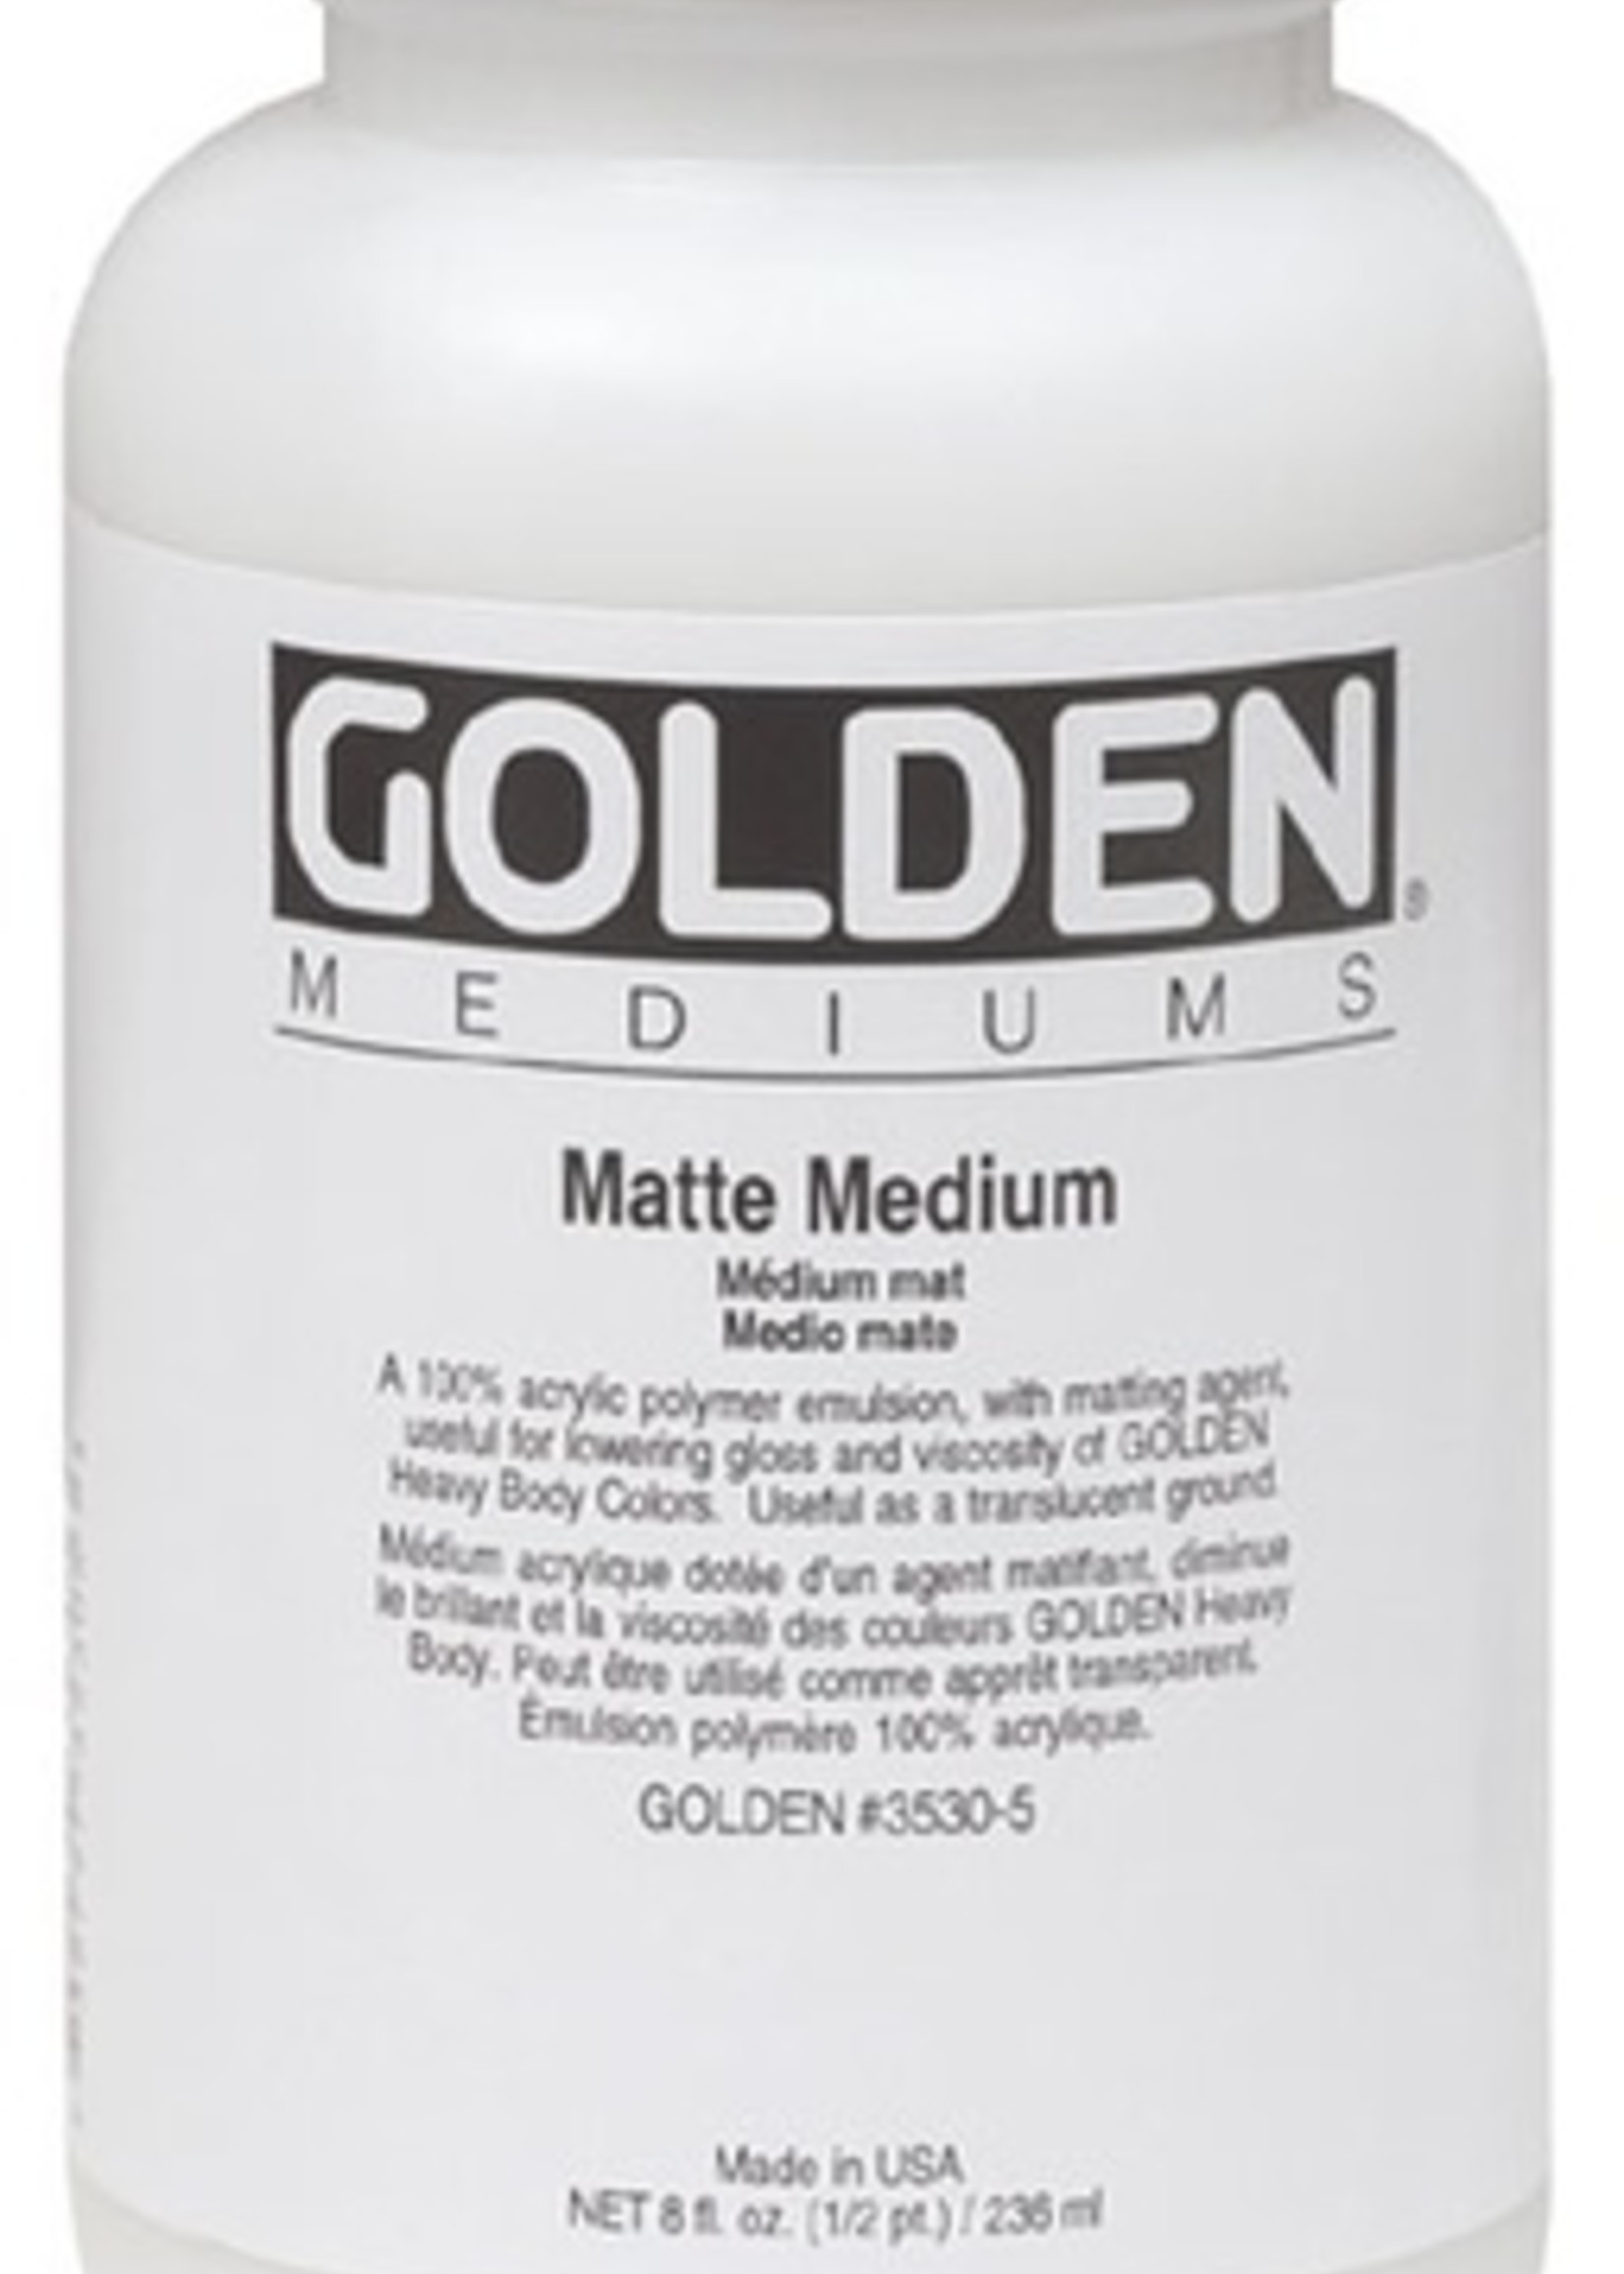 GOLDEN GOLDEN MATTE MEDIUM 16OZ